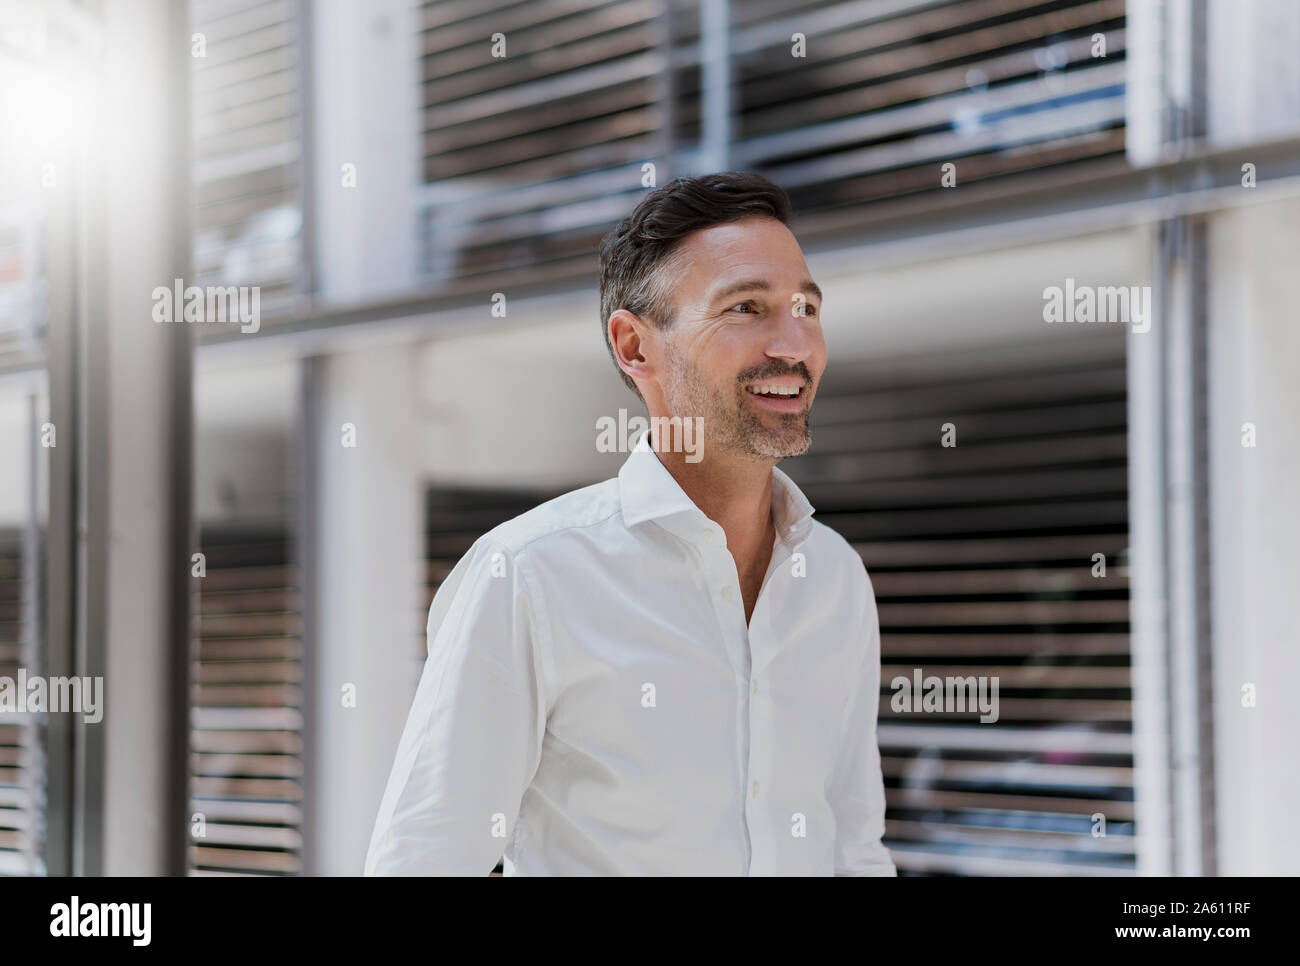 Smiling businessman dans un parking portant chemise blanche Banque D'Images